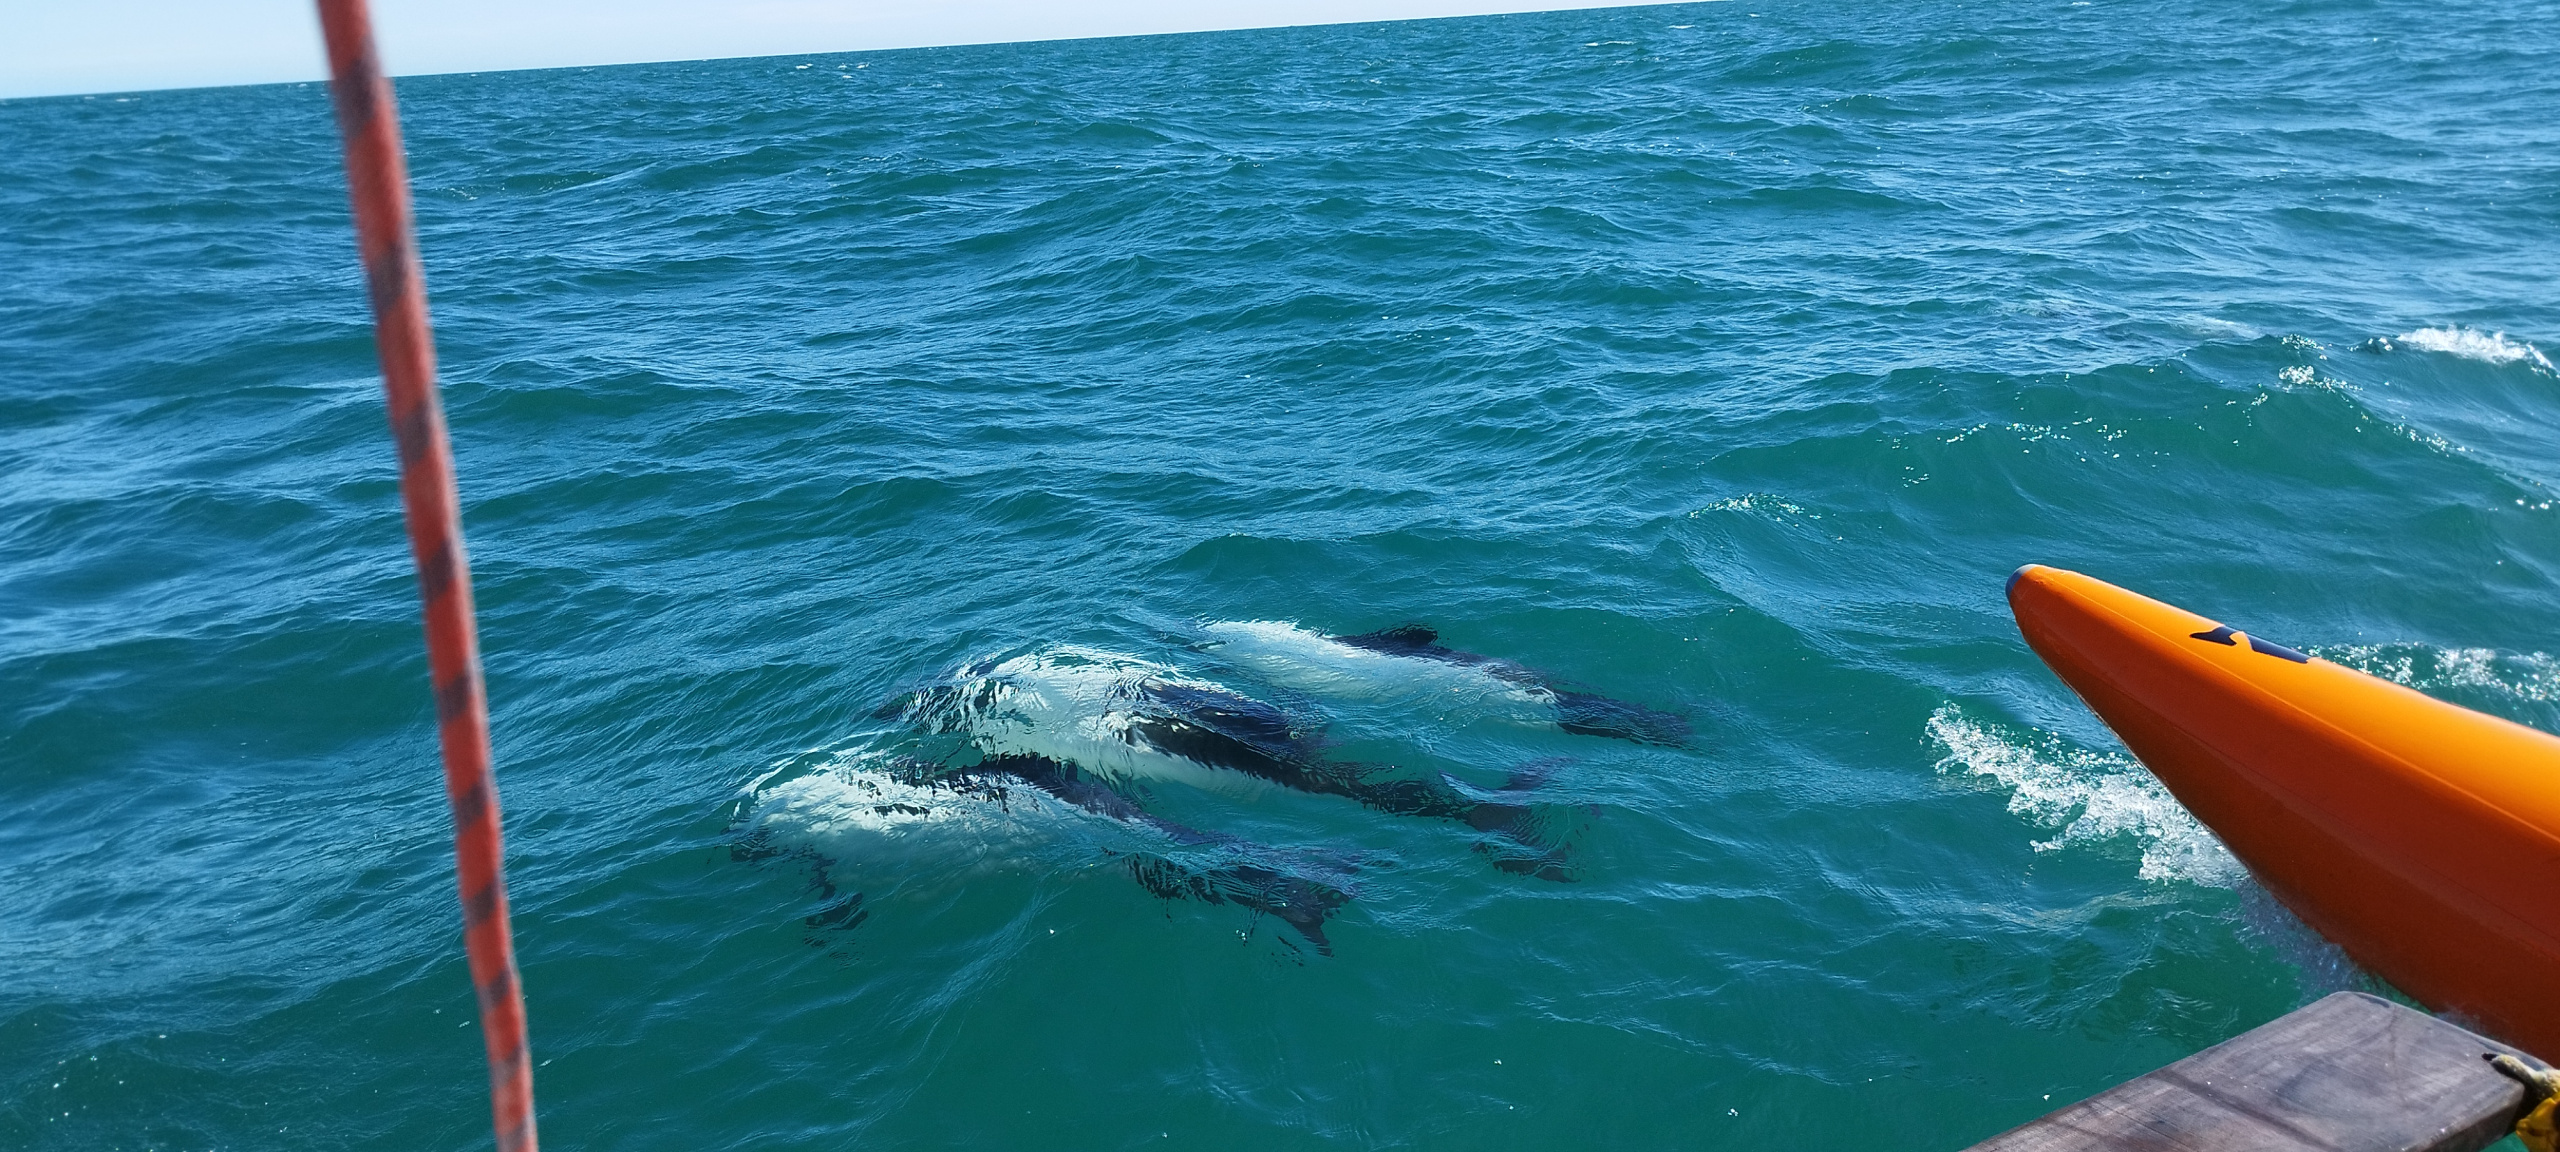 Стая дельфинов подошла к тримарану. Фото участников кругосветной экспедиции РГО